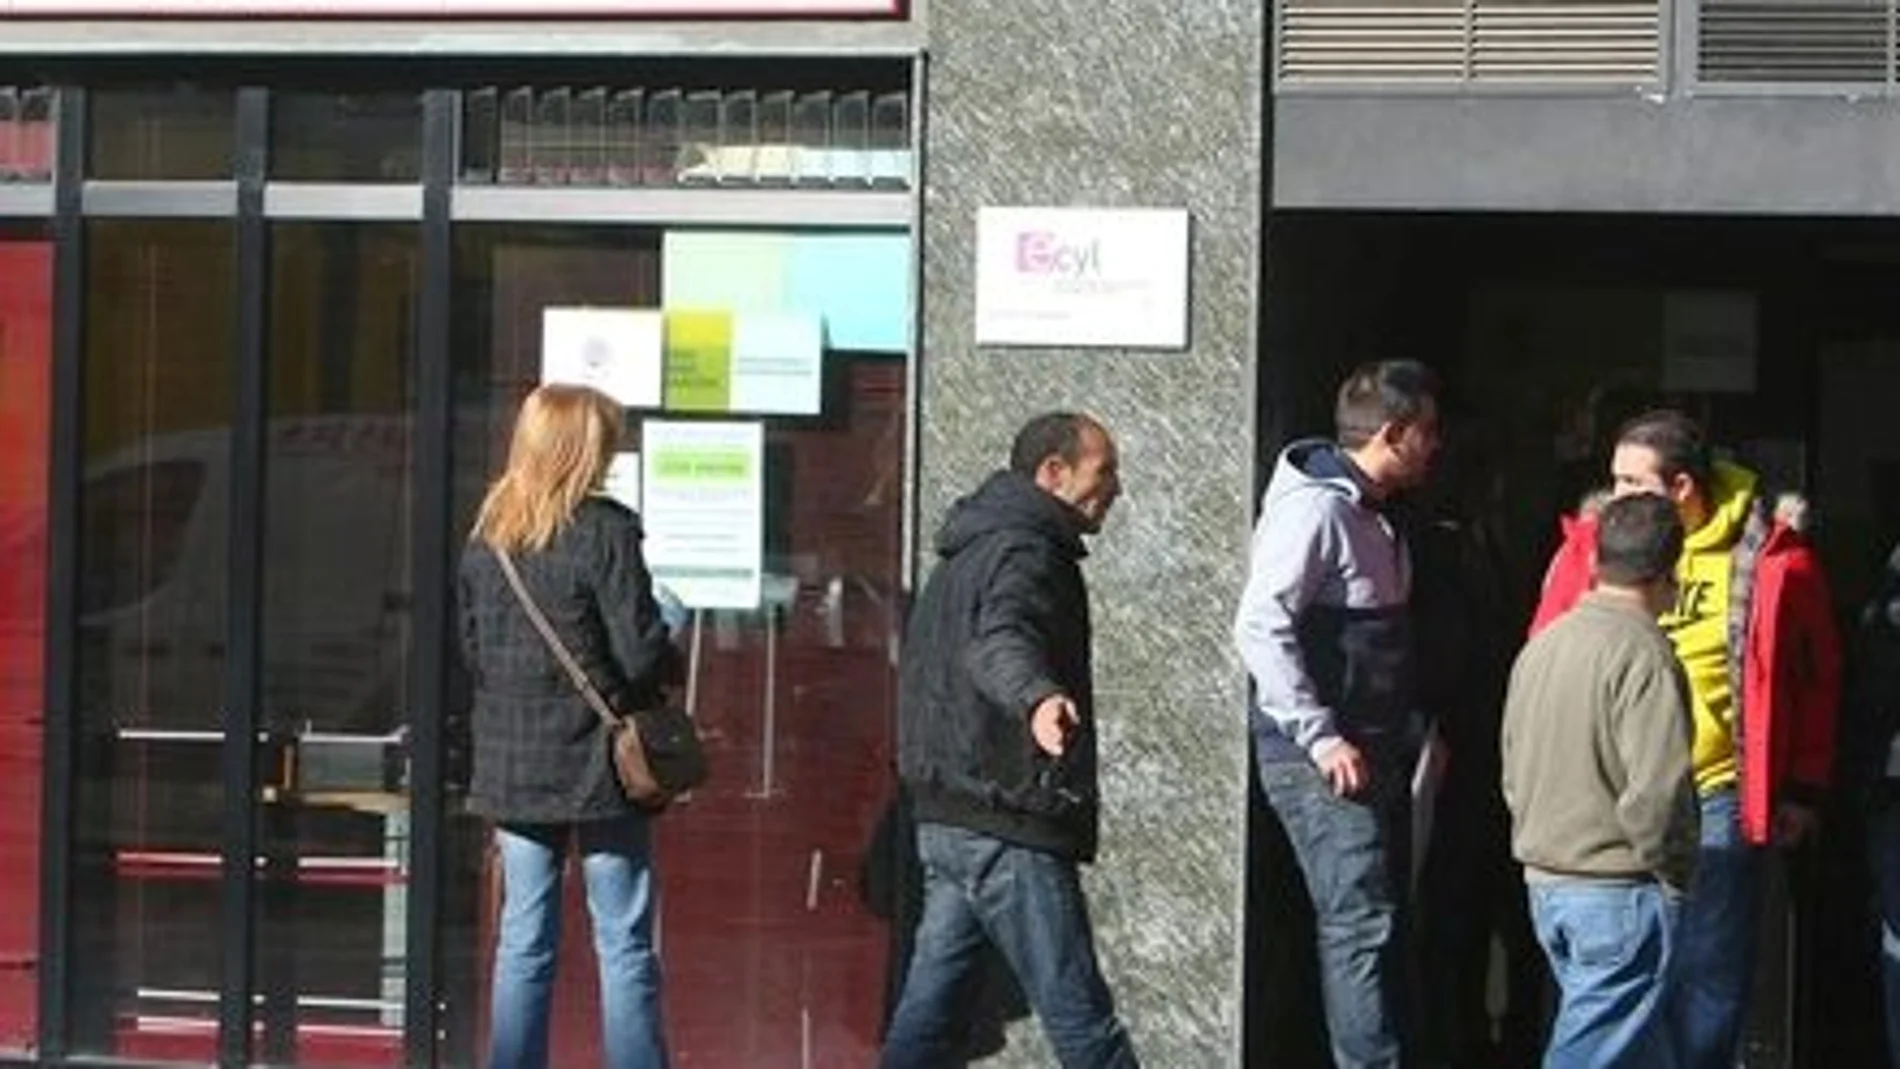 Un grupo de jóvenes entra a la oficina del Ecyl en Ponferrada